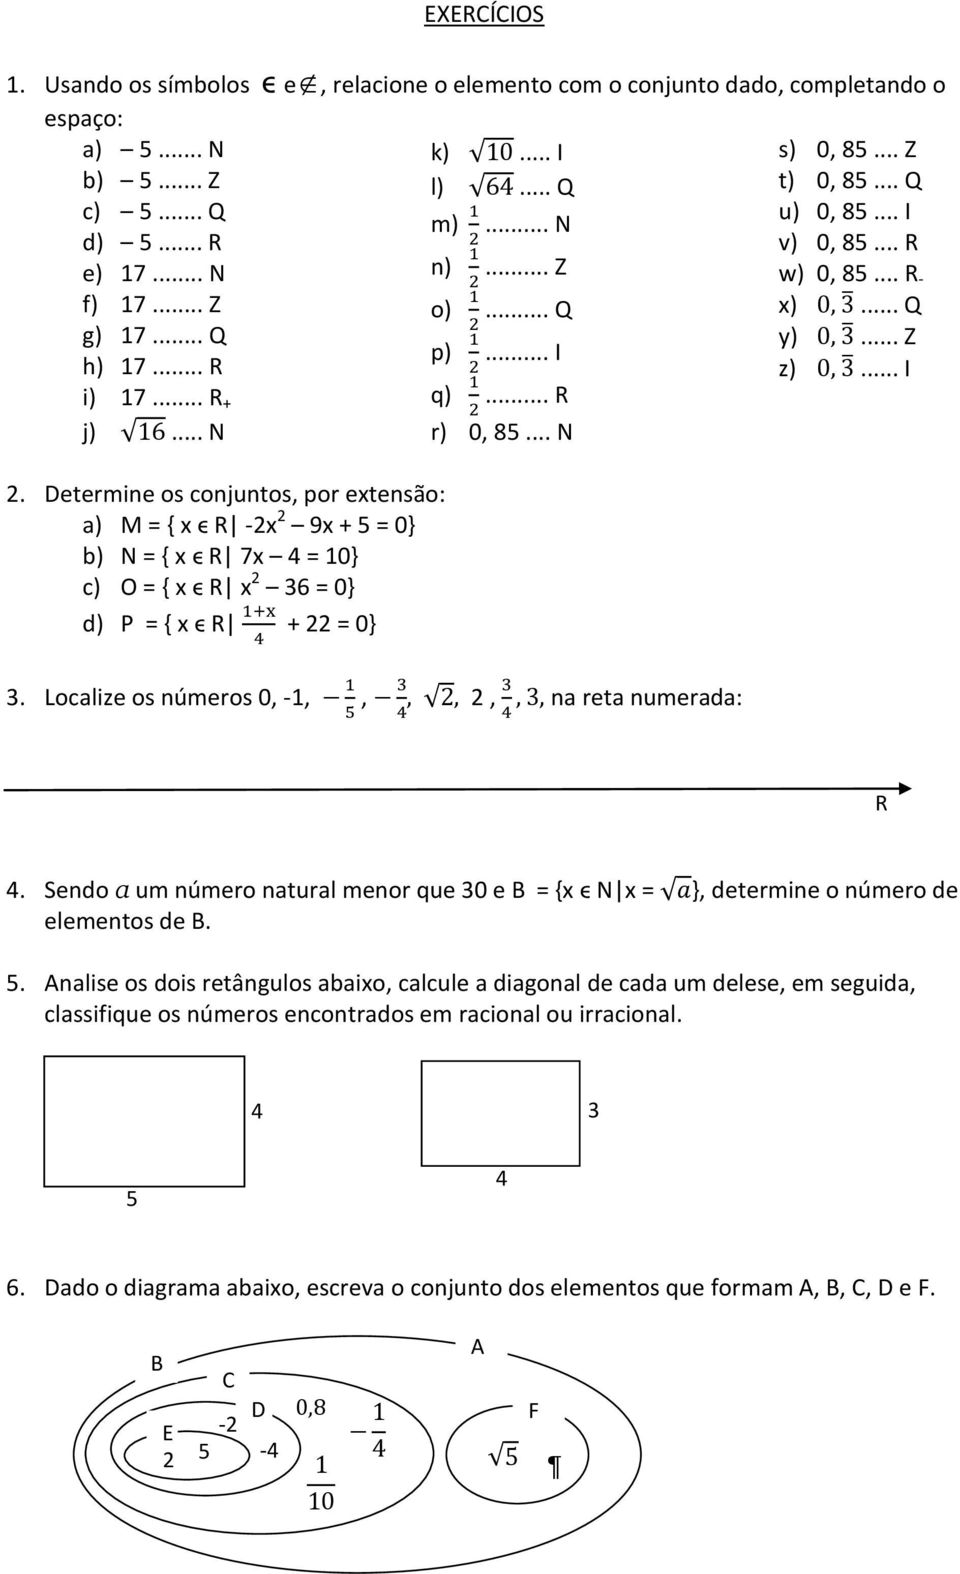 Determine os conjuntos, por extensão: a) M = { x ϵ -2x 2 9x + 5 = 0} b) N = { x ϵ 7x 4 = 10} c) O = { x ϵ x 2 36 = 0} d) P = { x ϵ + 22 = 0} 3. Localize os números 0, -1,, 2, na reta numerada: 4.